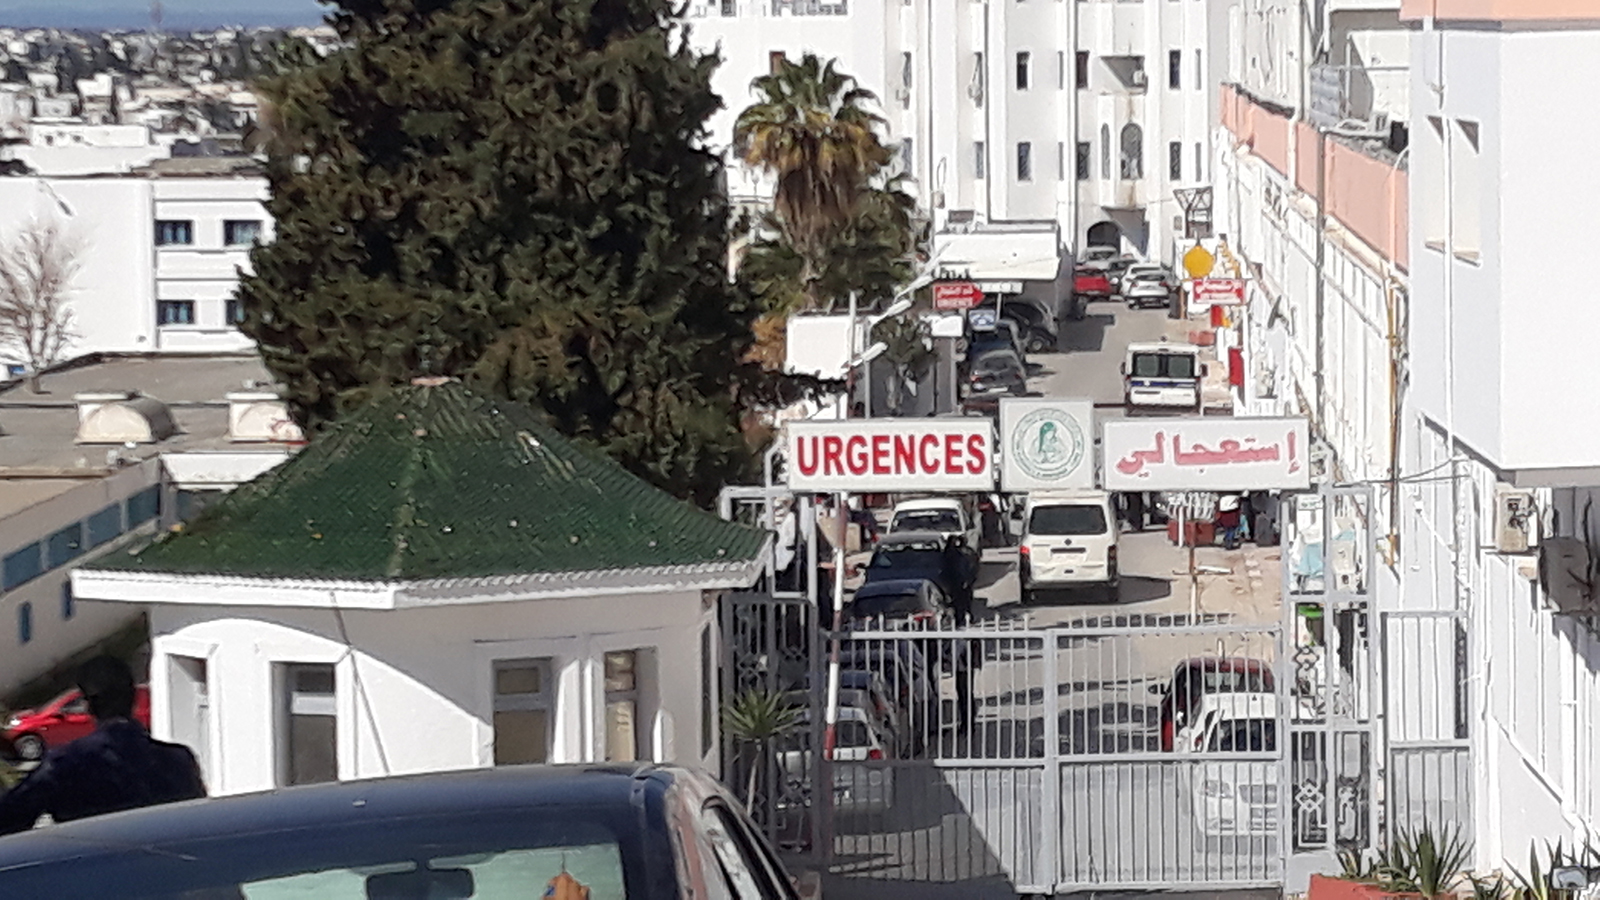 ‪بوابة مستشفى الرابطة أغلقت وشددت حراستها أمام العائدين‬ (الجزيرة)